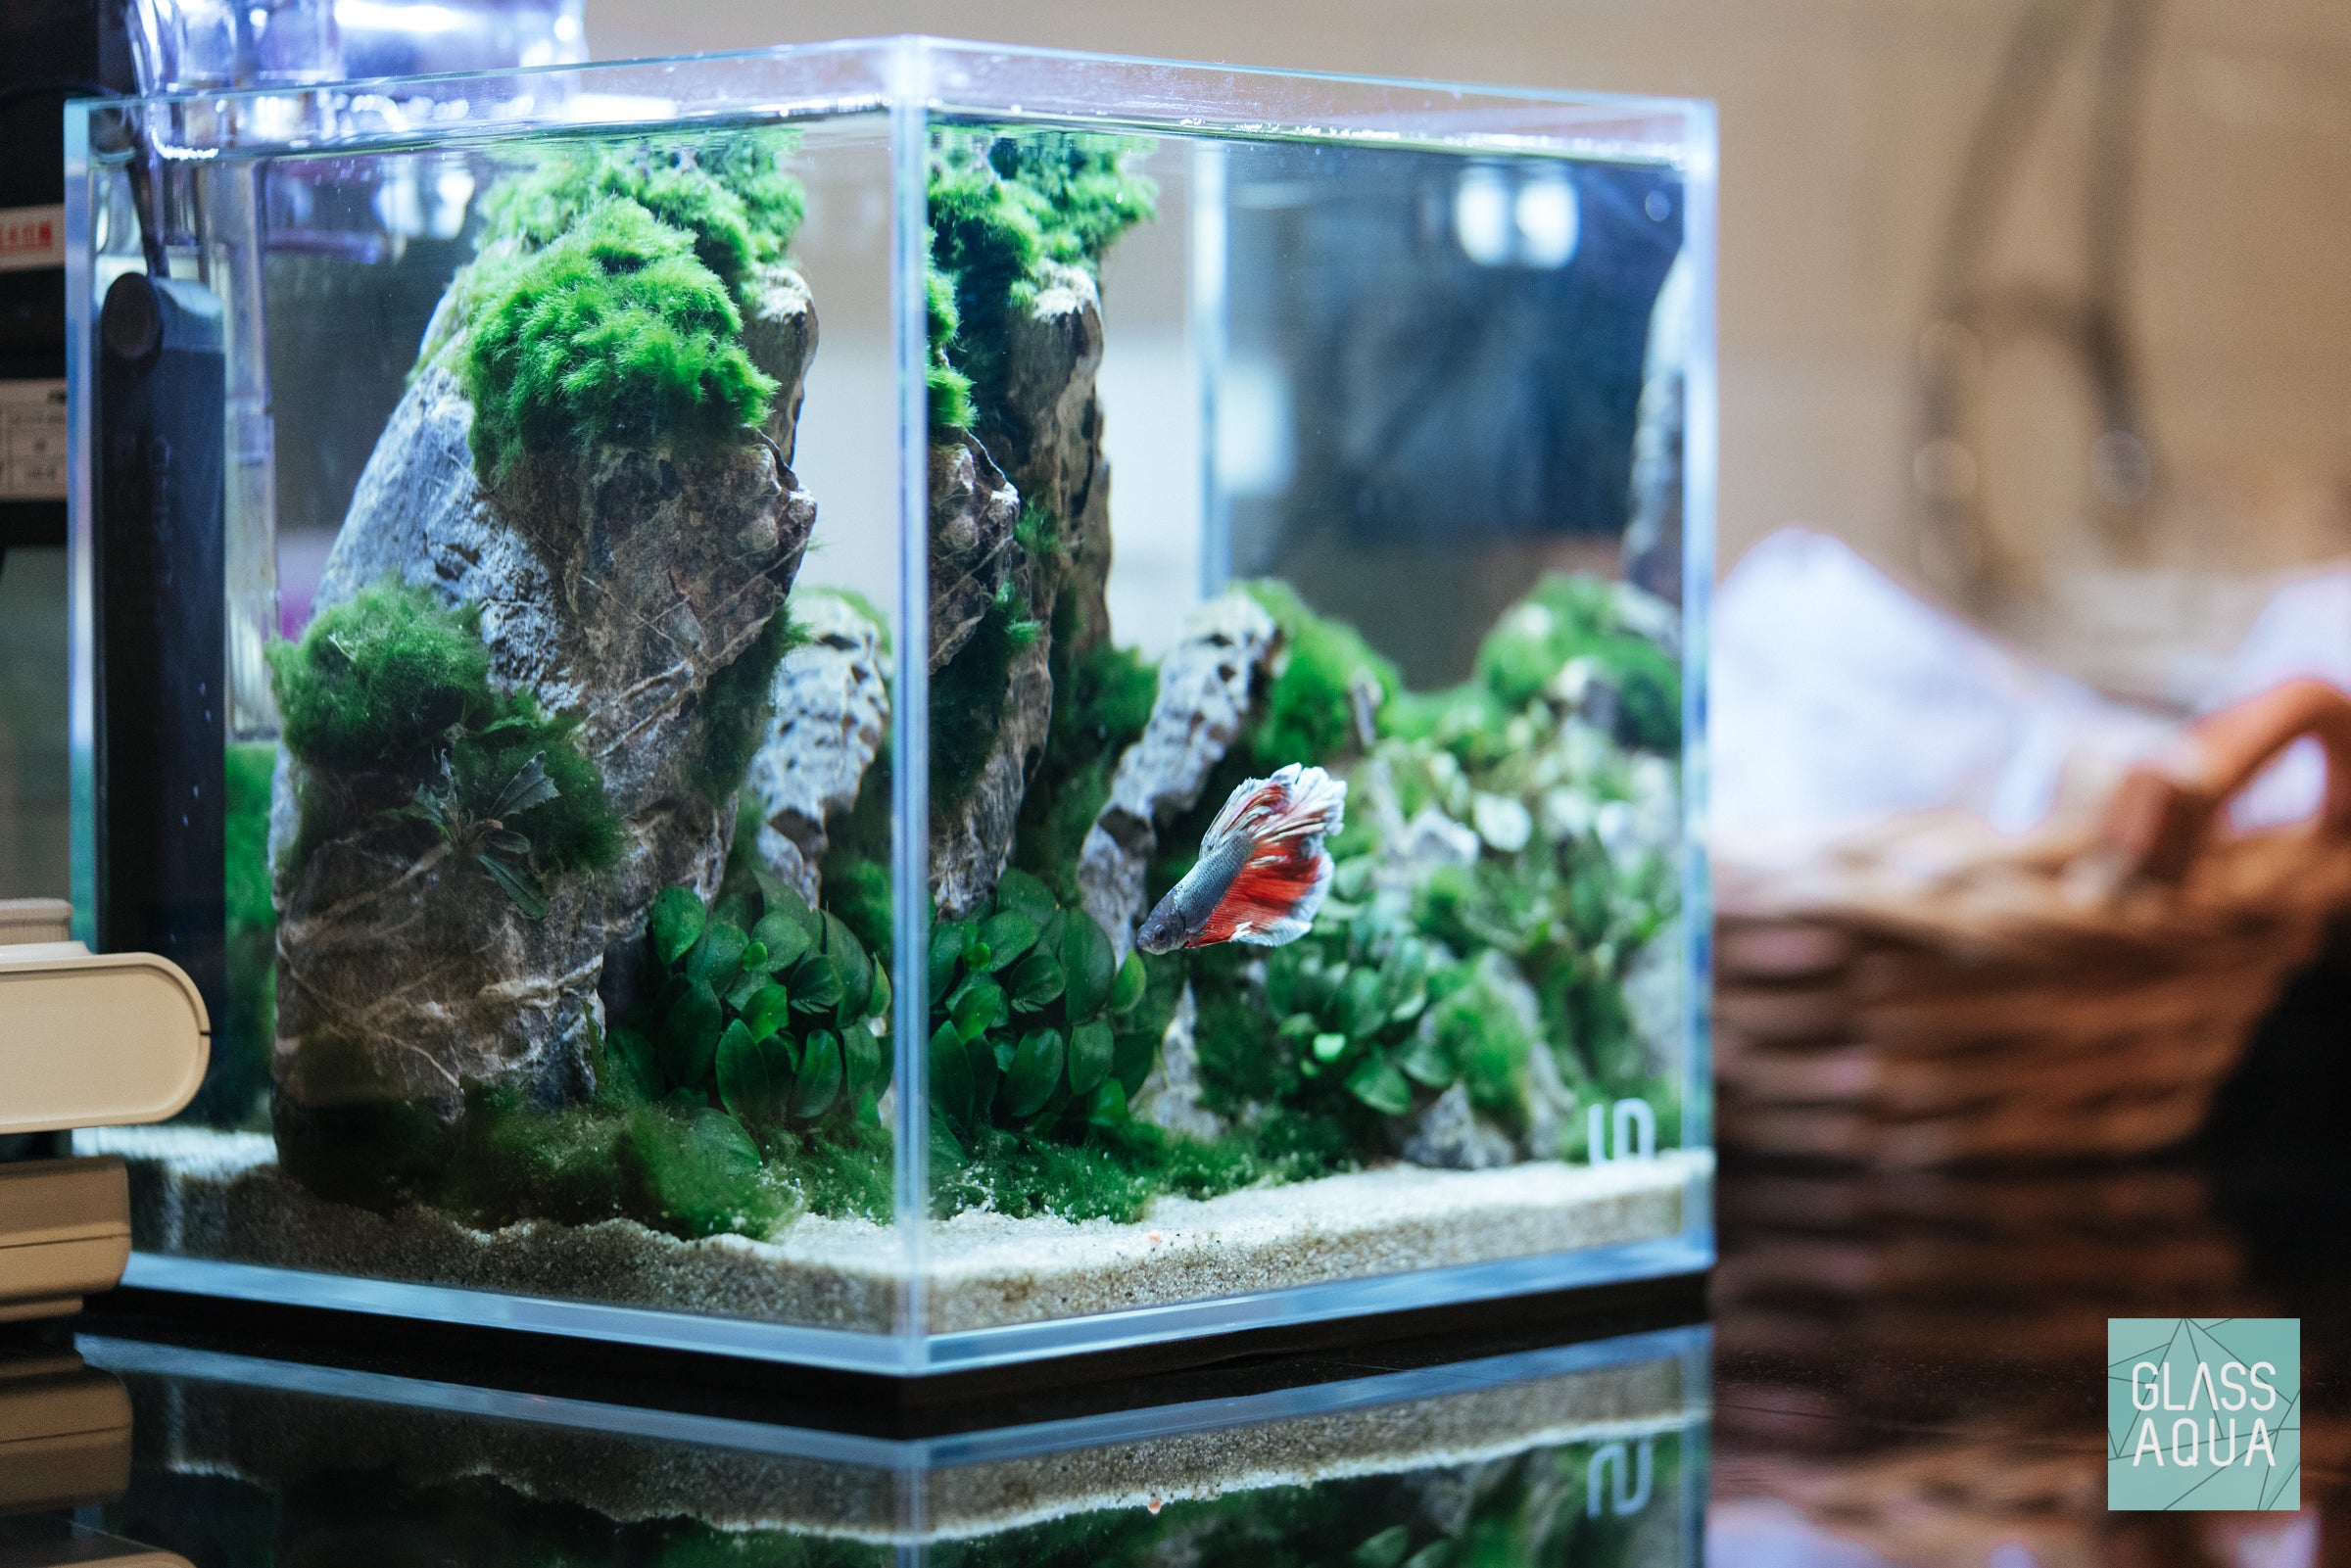 5 Moss Balls +1ExtraFREE live aquarium plants Marimo Ball shrimps fish tank  nano